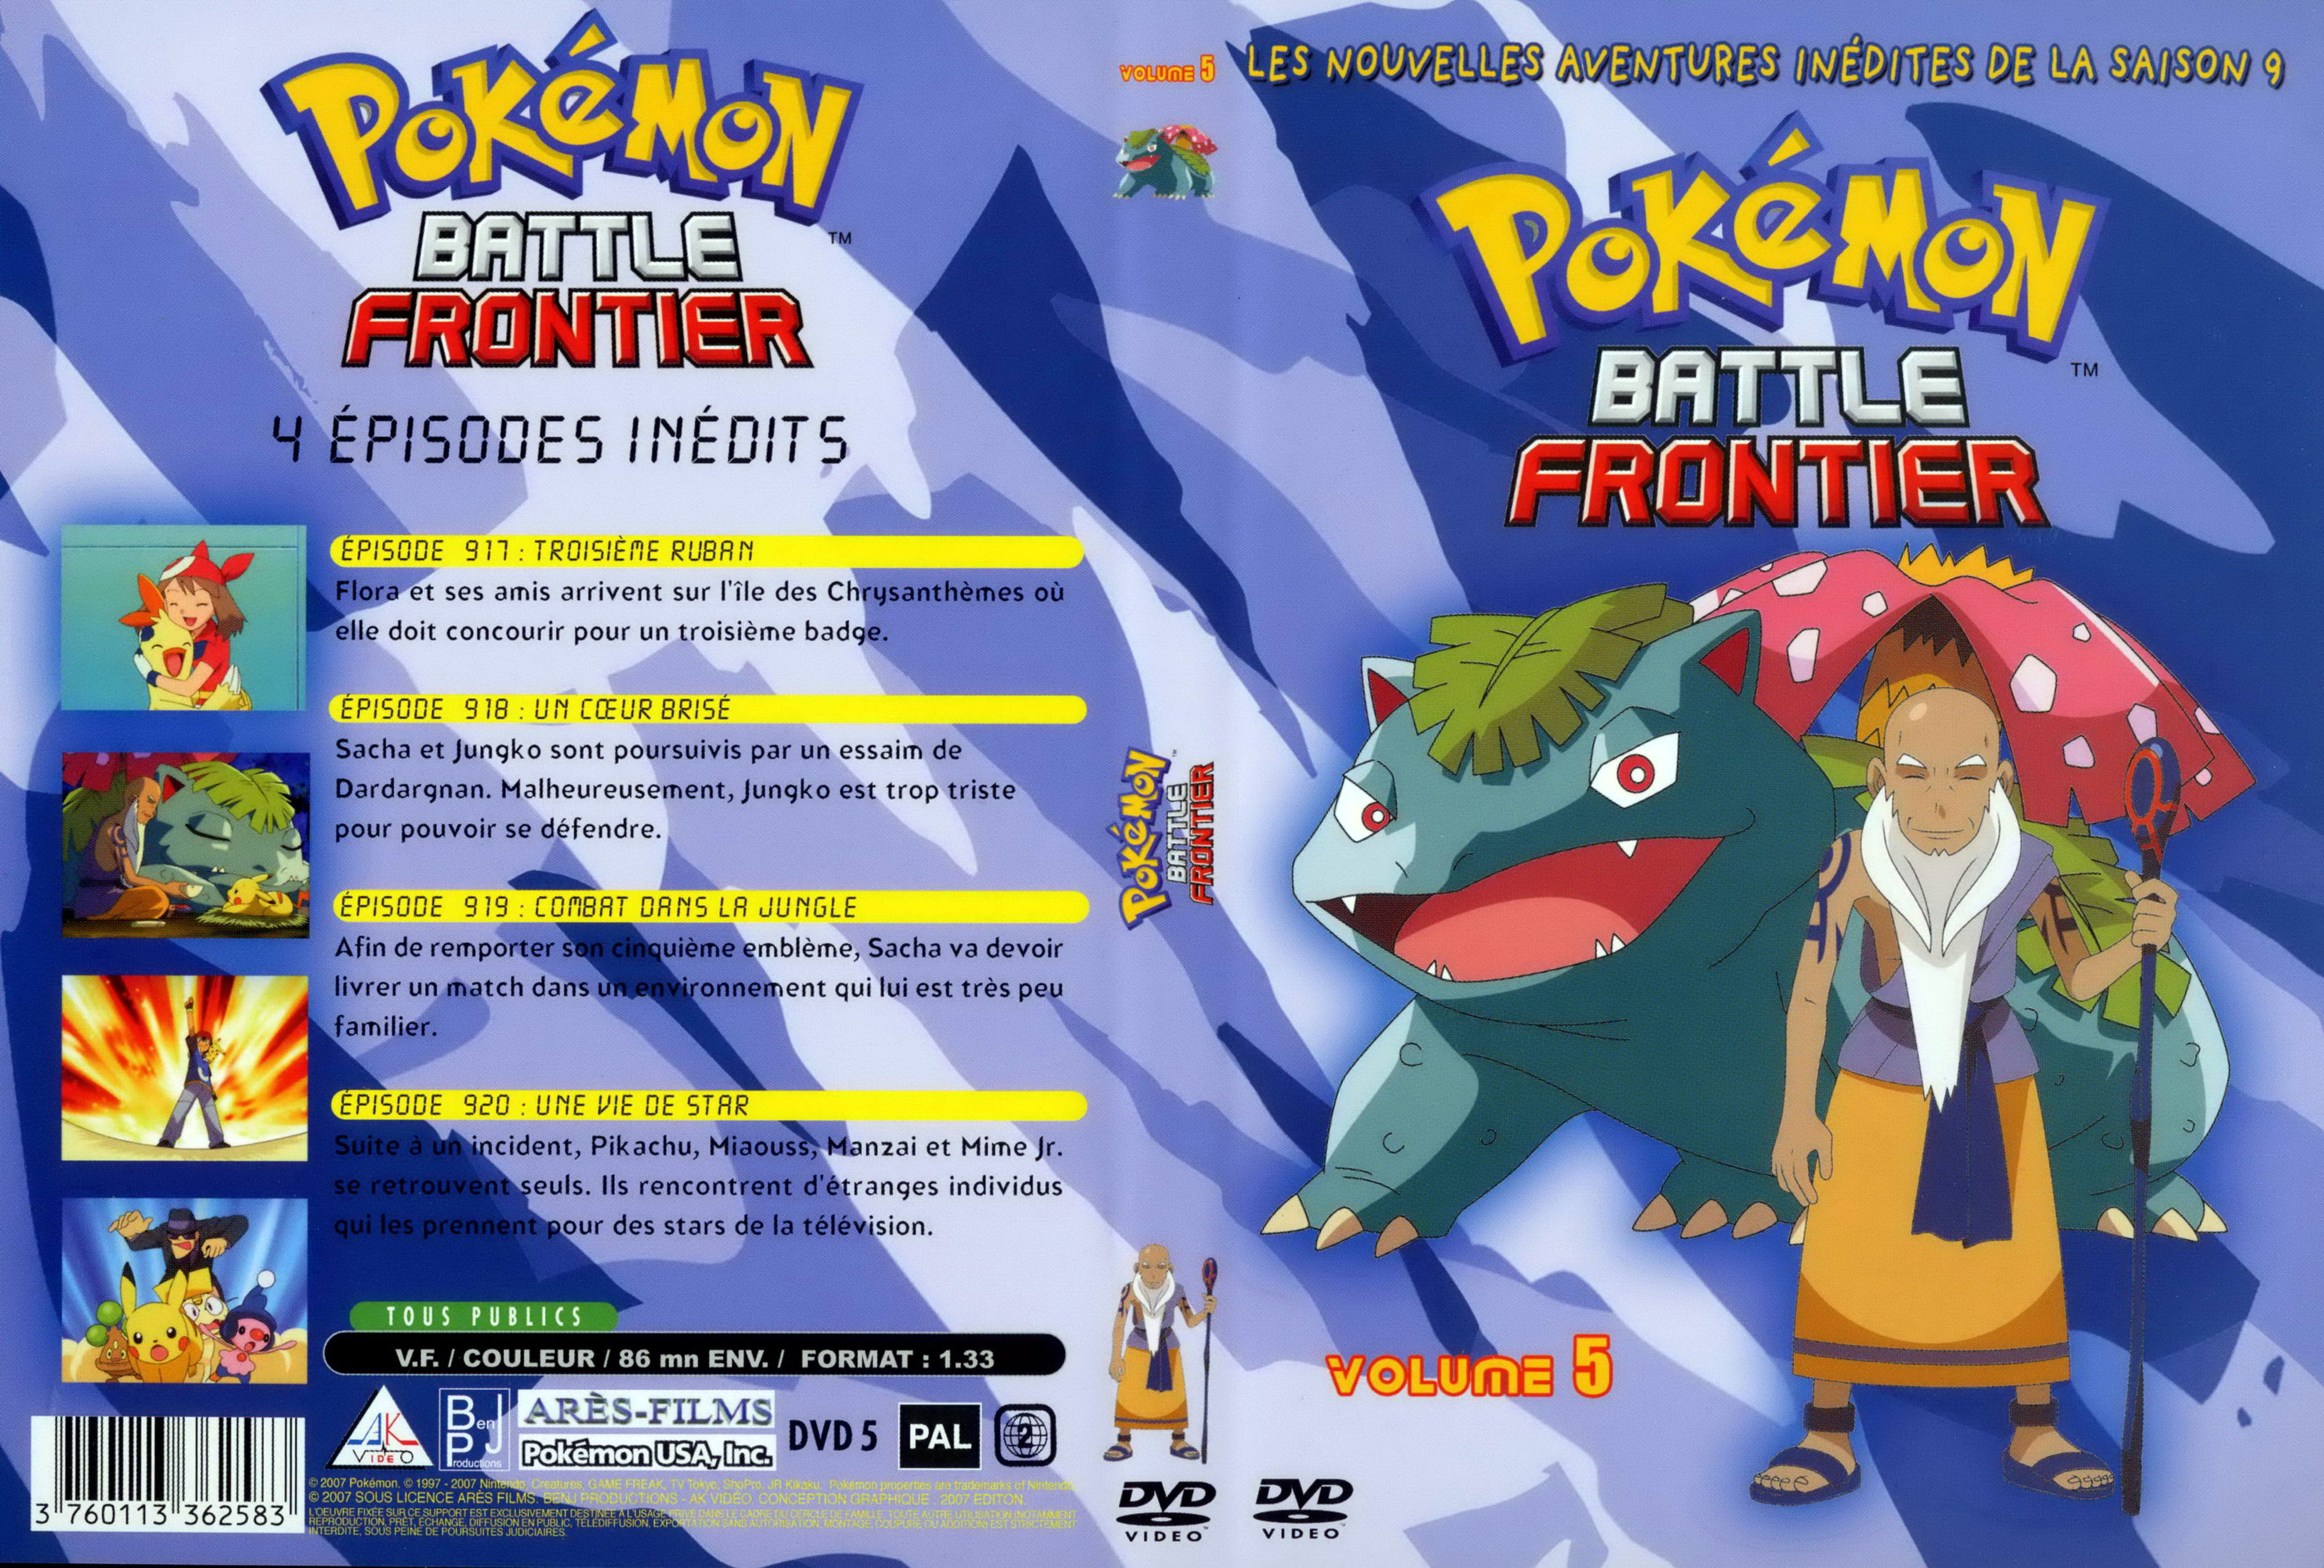 Jaquette DVD Pokemon battle frontier Saison 09 DVD 5